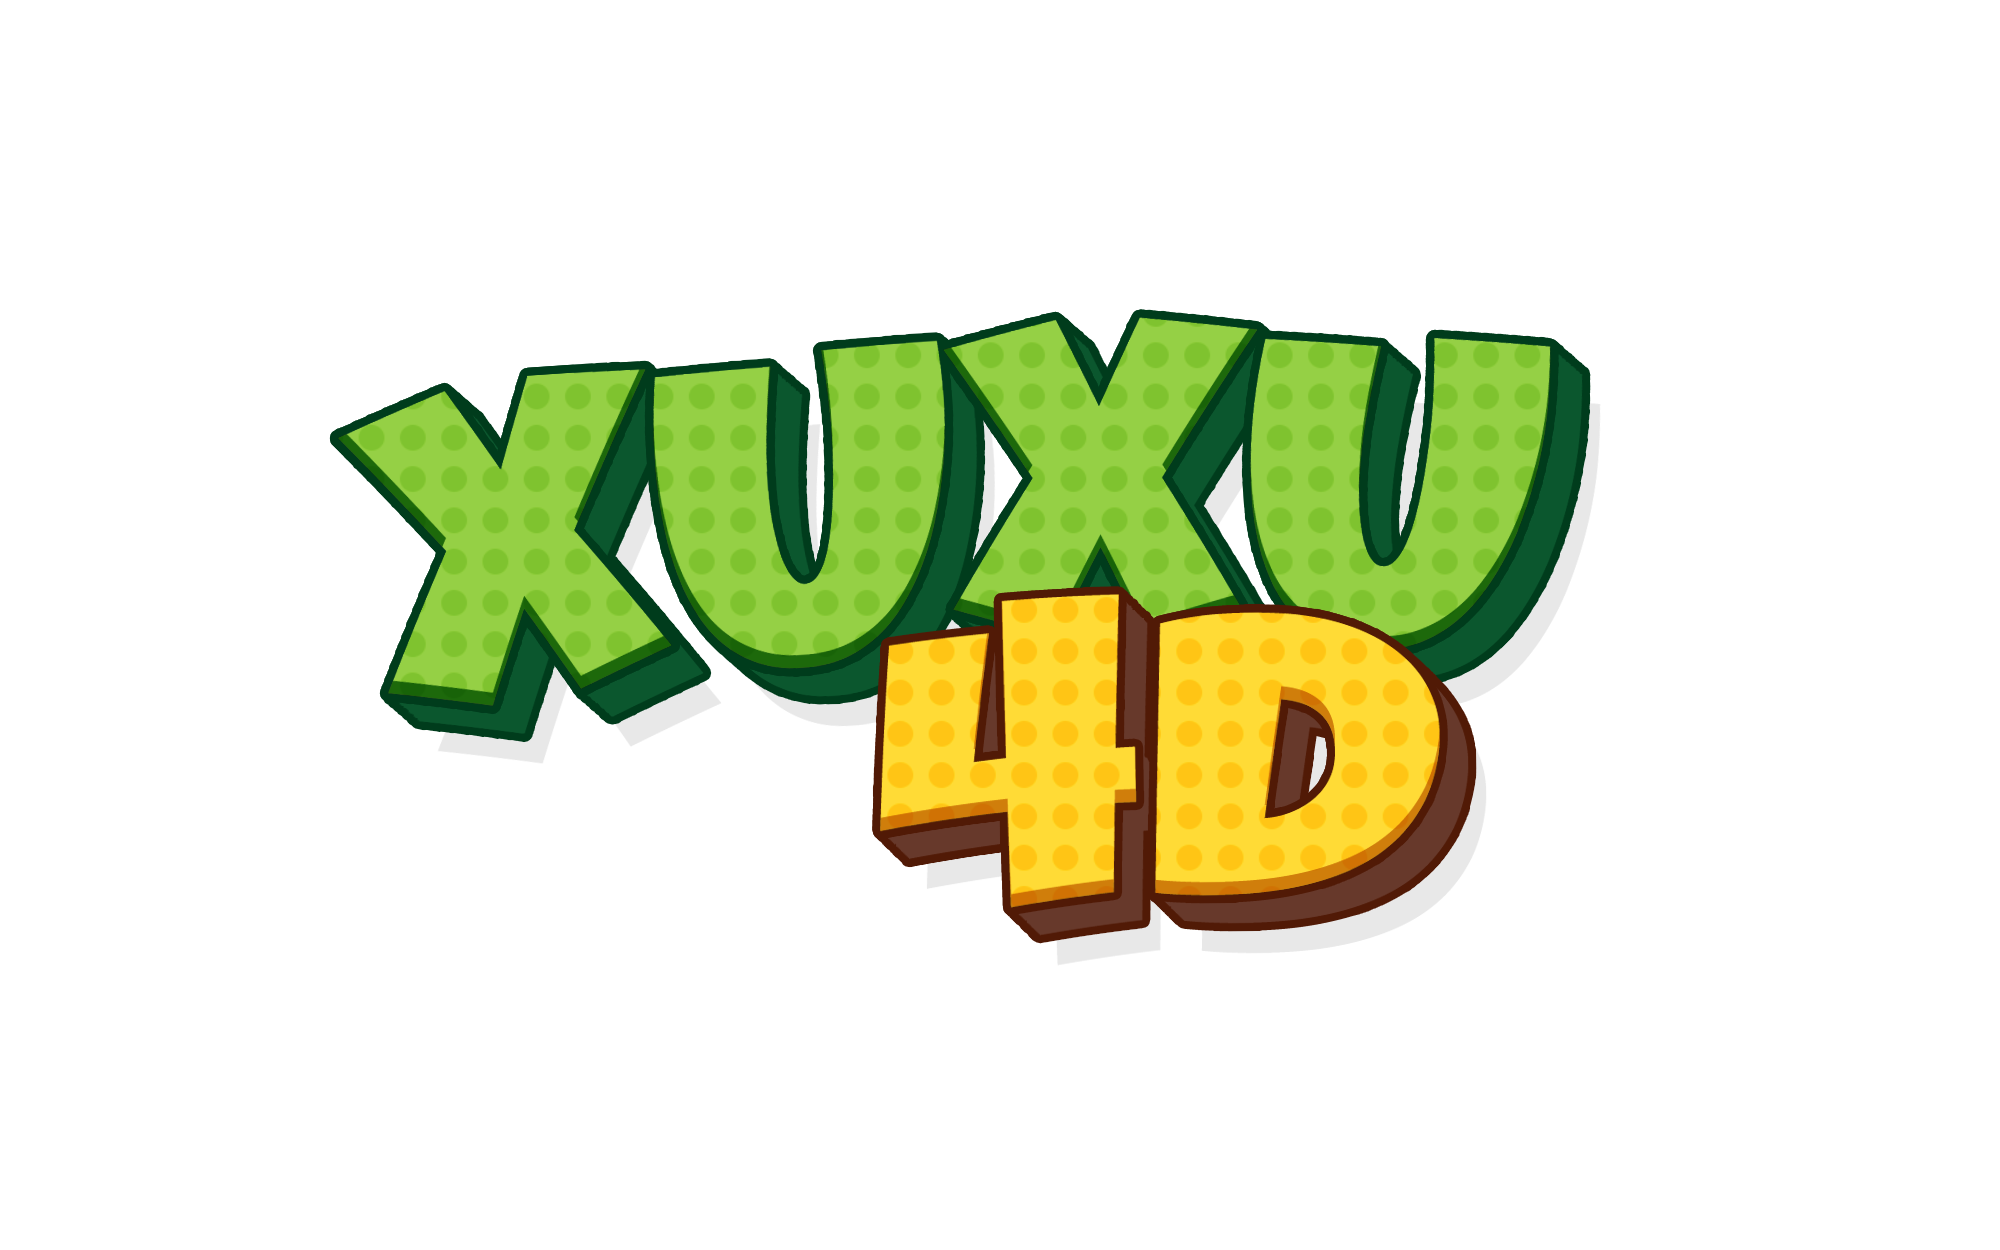 Xuxu4d